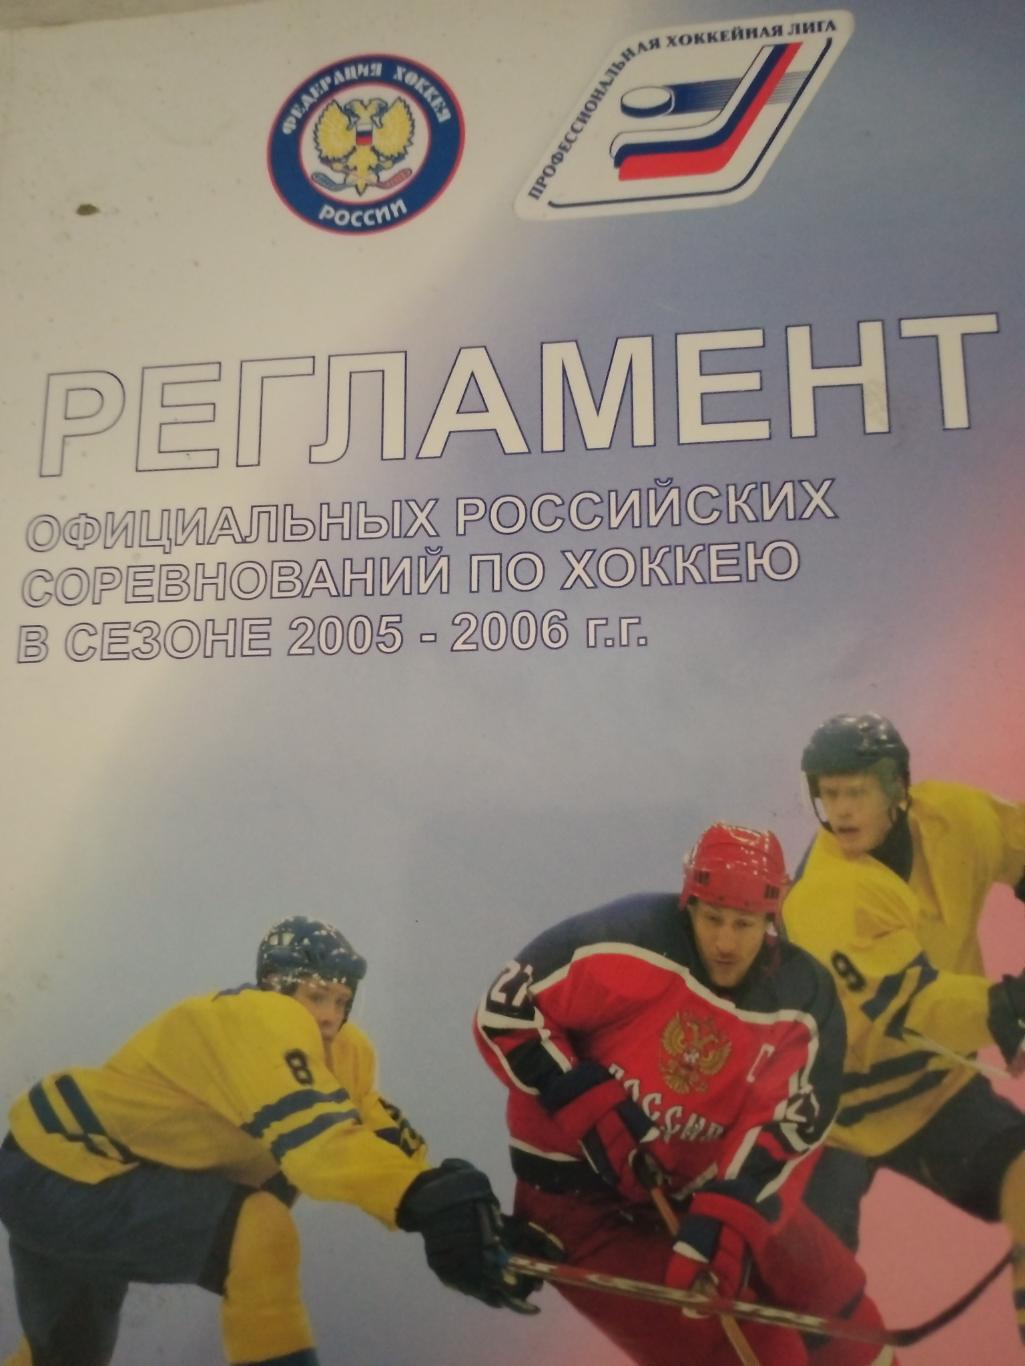 Регламент официальных российских соревнований по хоккею Сезон-2005/2006